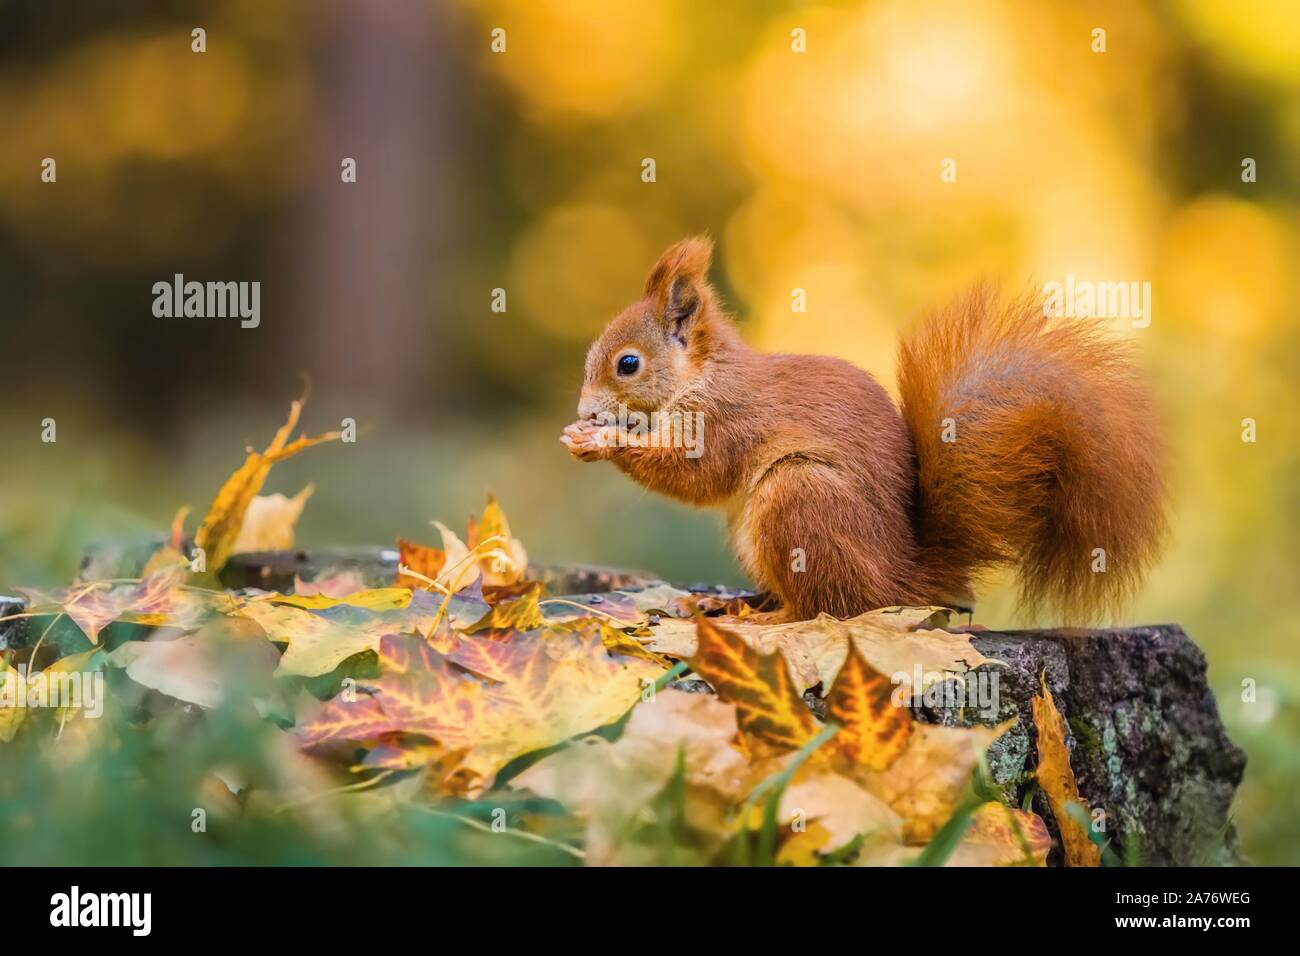 Mignon écureuil rouge avec queue pelucheuse assis sur une souche d'arbre couverts de feuilles colorées qui se nourrissent de graines. La journée ensoleillée d'automne dans une forêt profonde. Vous floue Banque D'Images